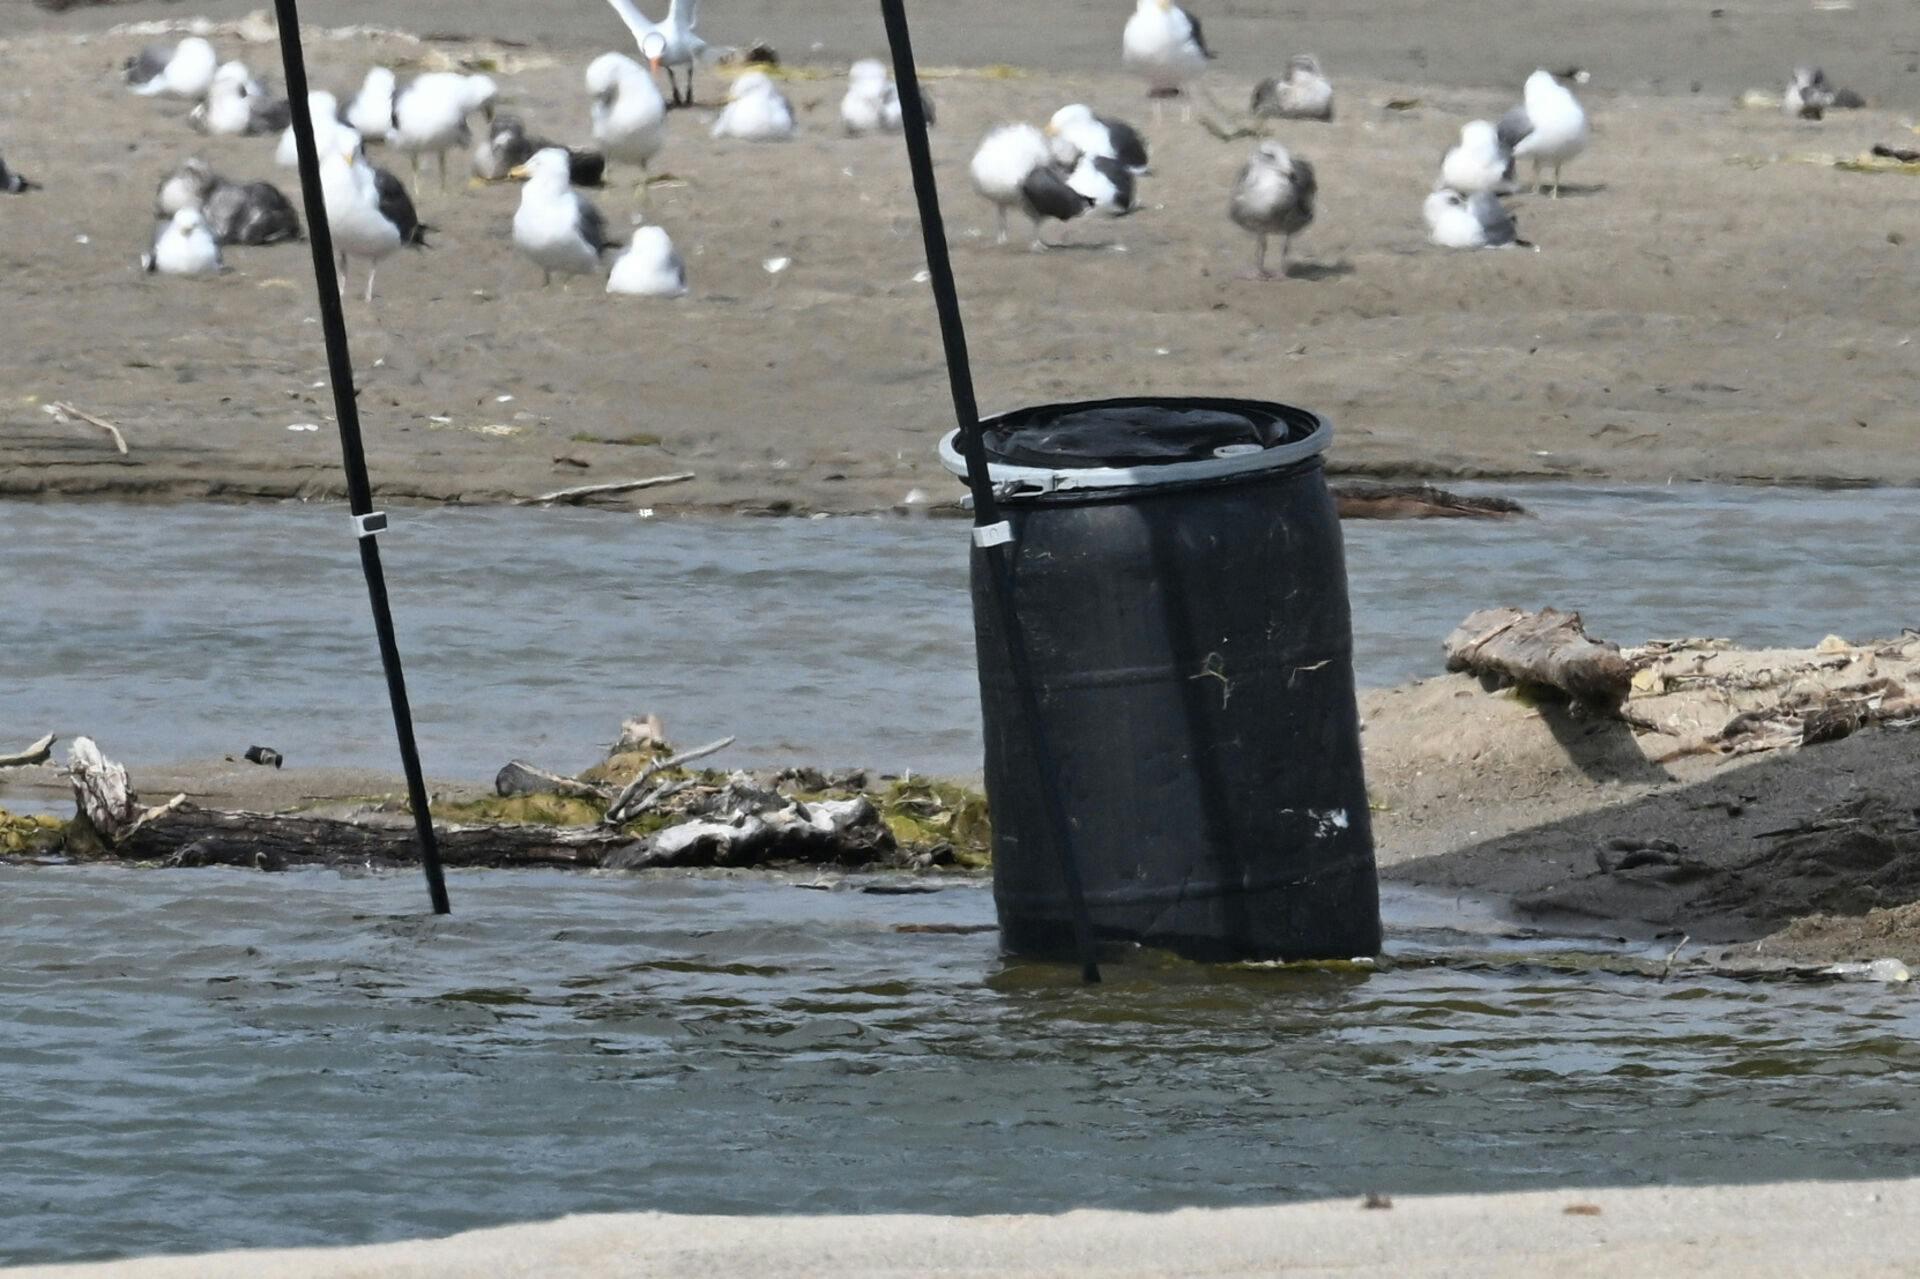 Mandag morgen blev der gjort et gruopvækkende fund, da en livredder fandt et lig i den her 200 liters tønde på stranden i Malibu.